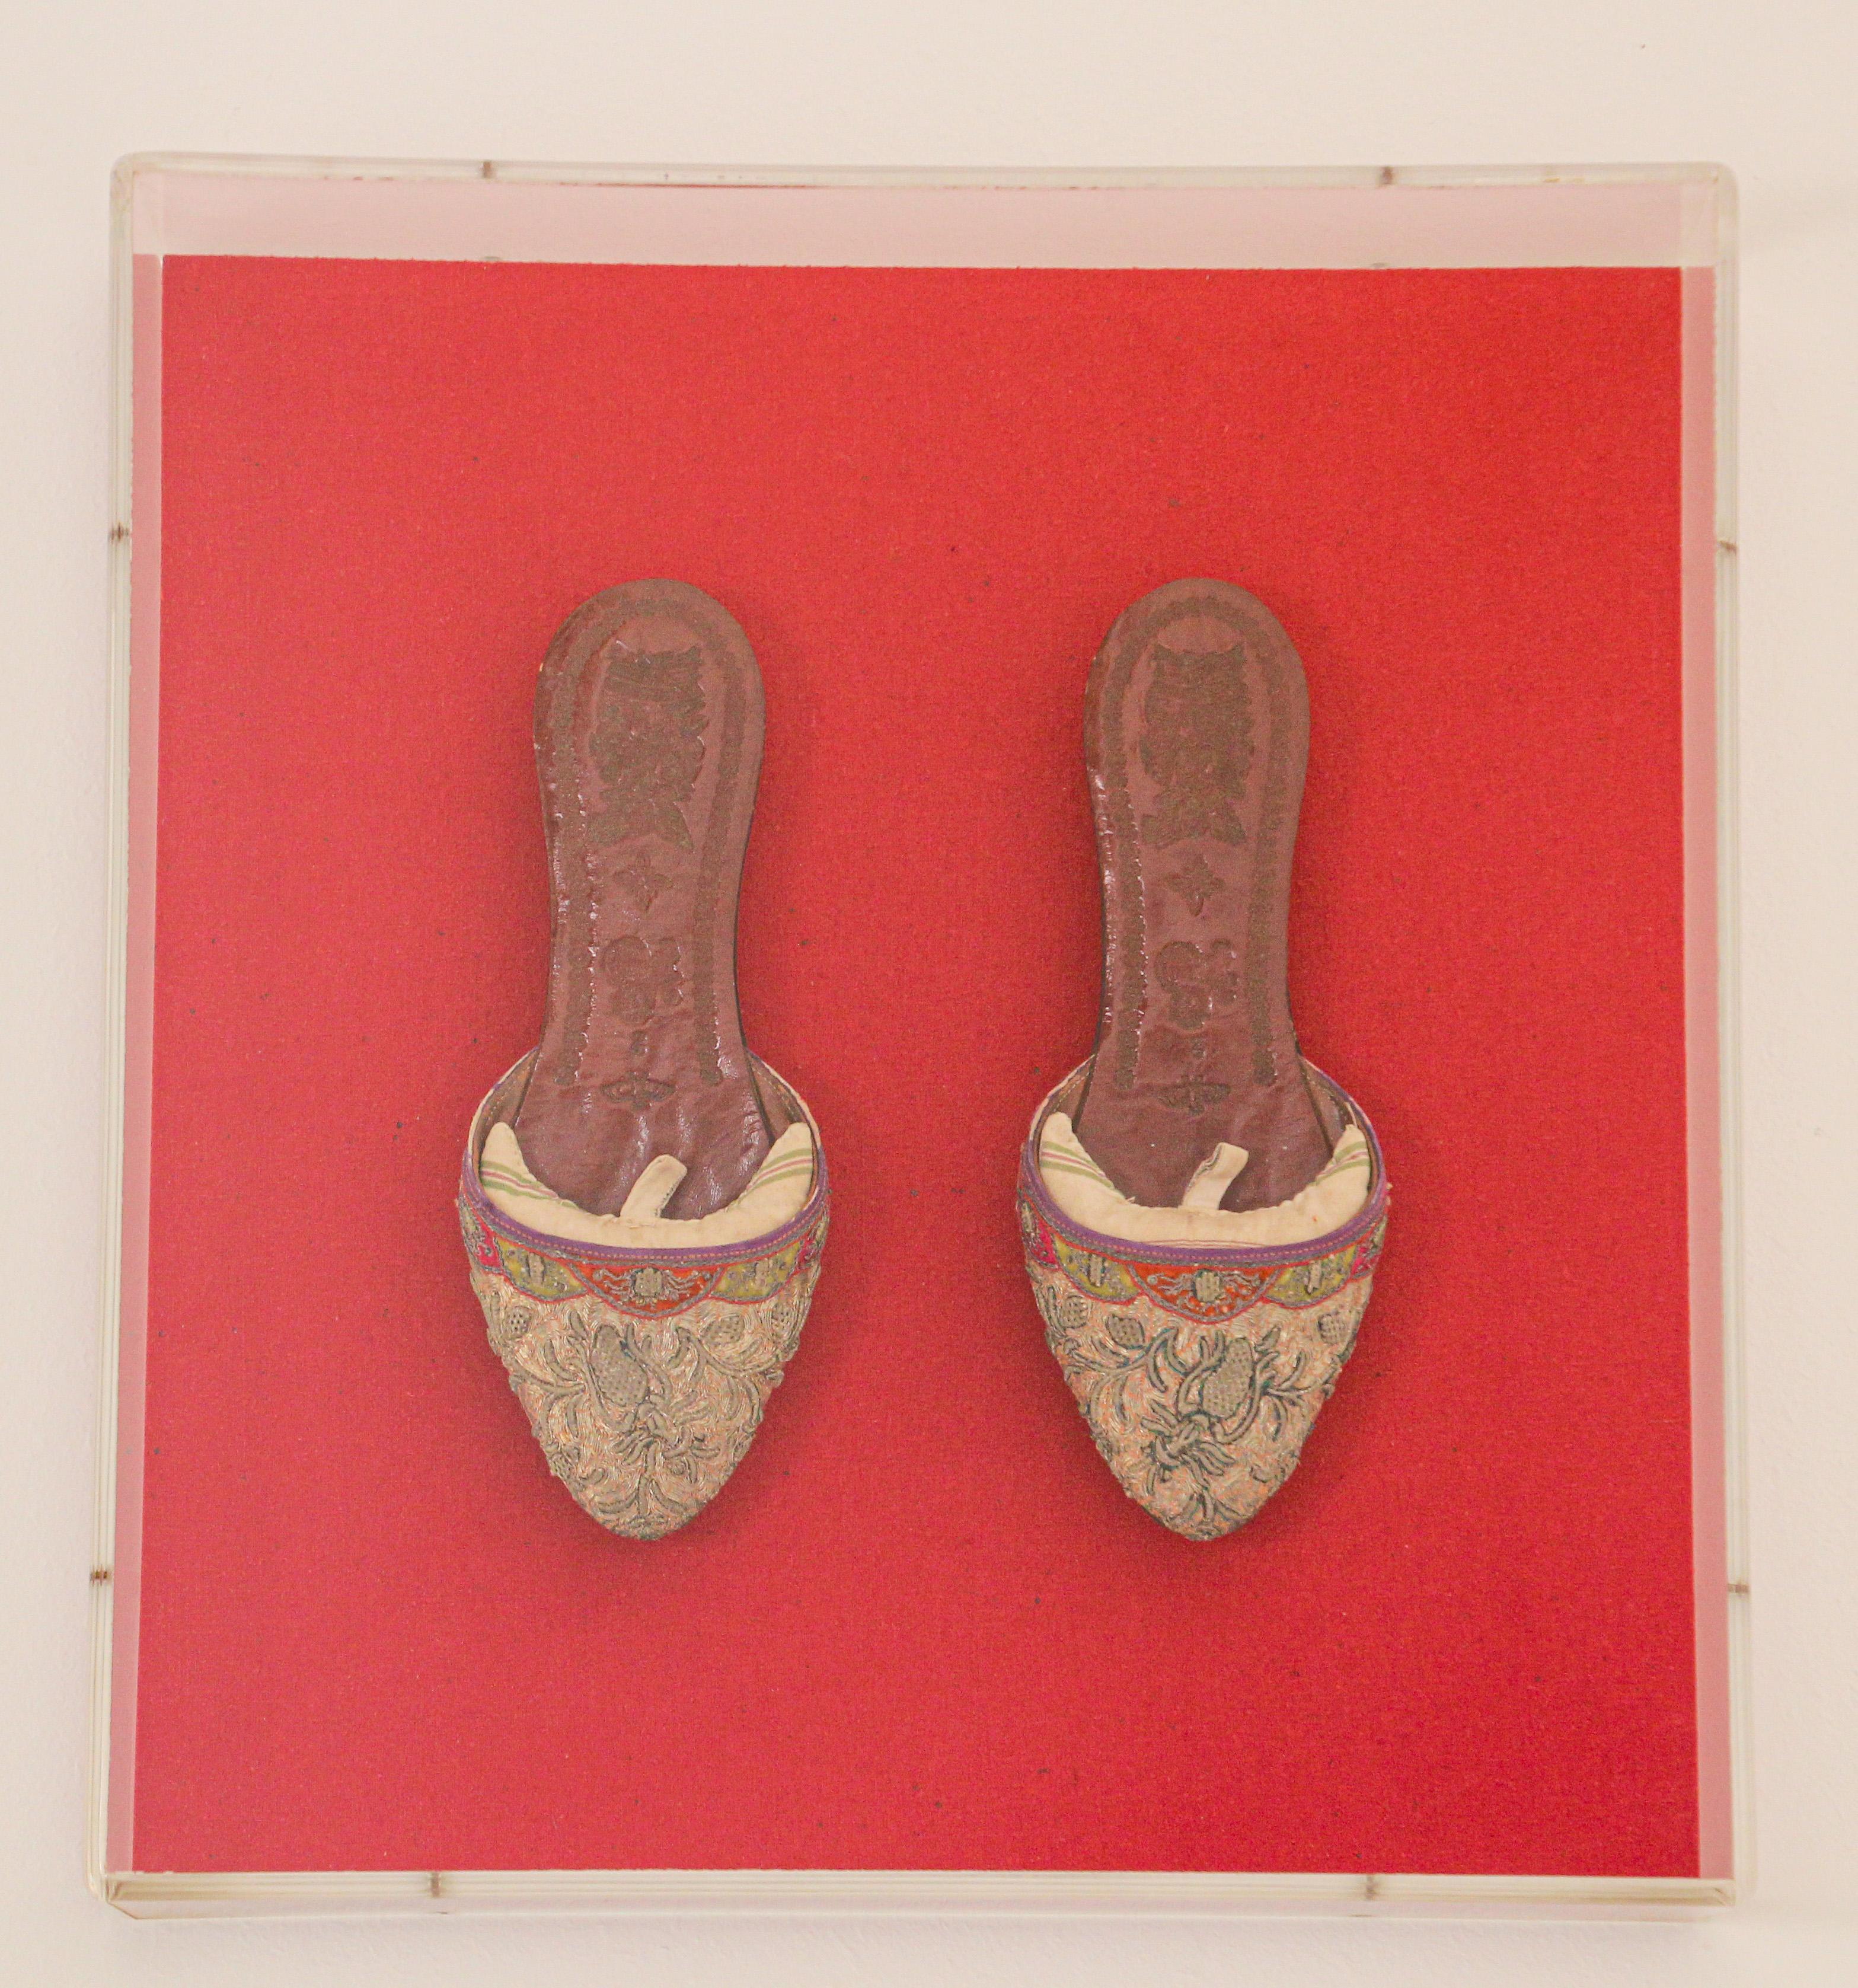 Encadrée dans une boîte en Lucite, paire de chaussures asiatiques chinoises en cuir et soie brodées et ornées de fils d'or.
Exquise paire de chaussures anciennes de collection montées et présentées sur un fond rouge.
Superbe art mural asiatique